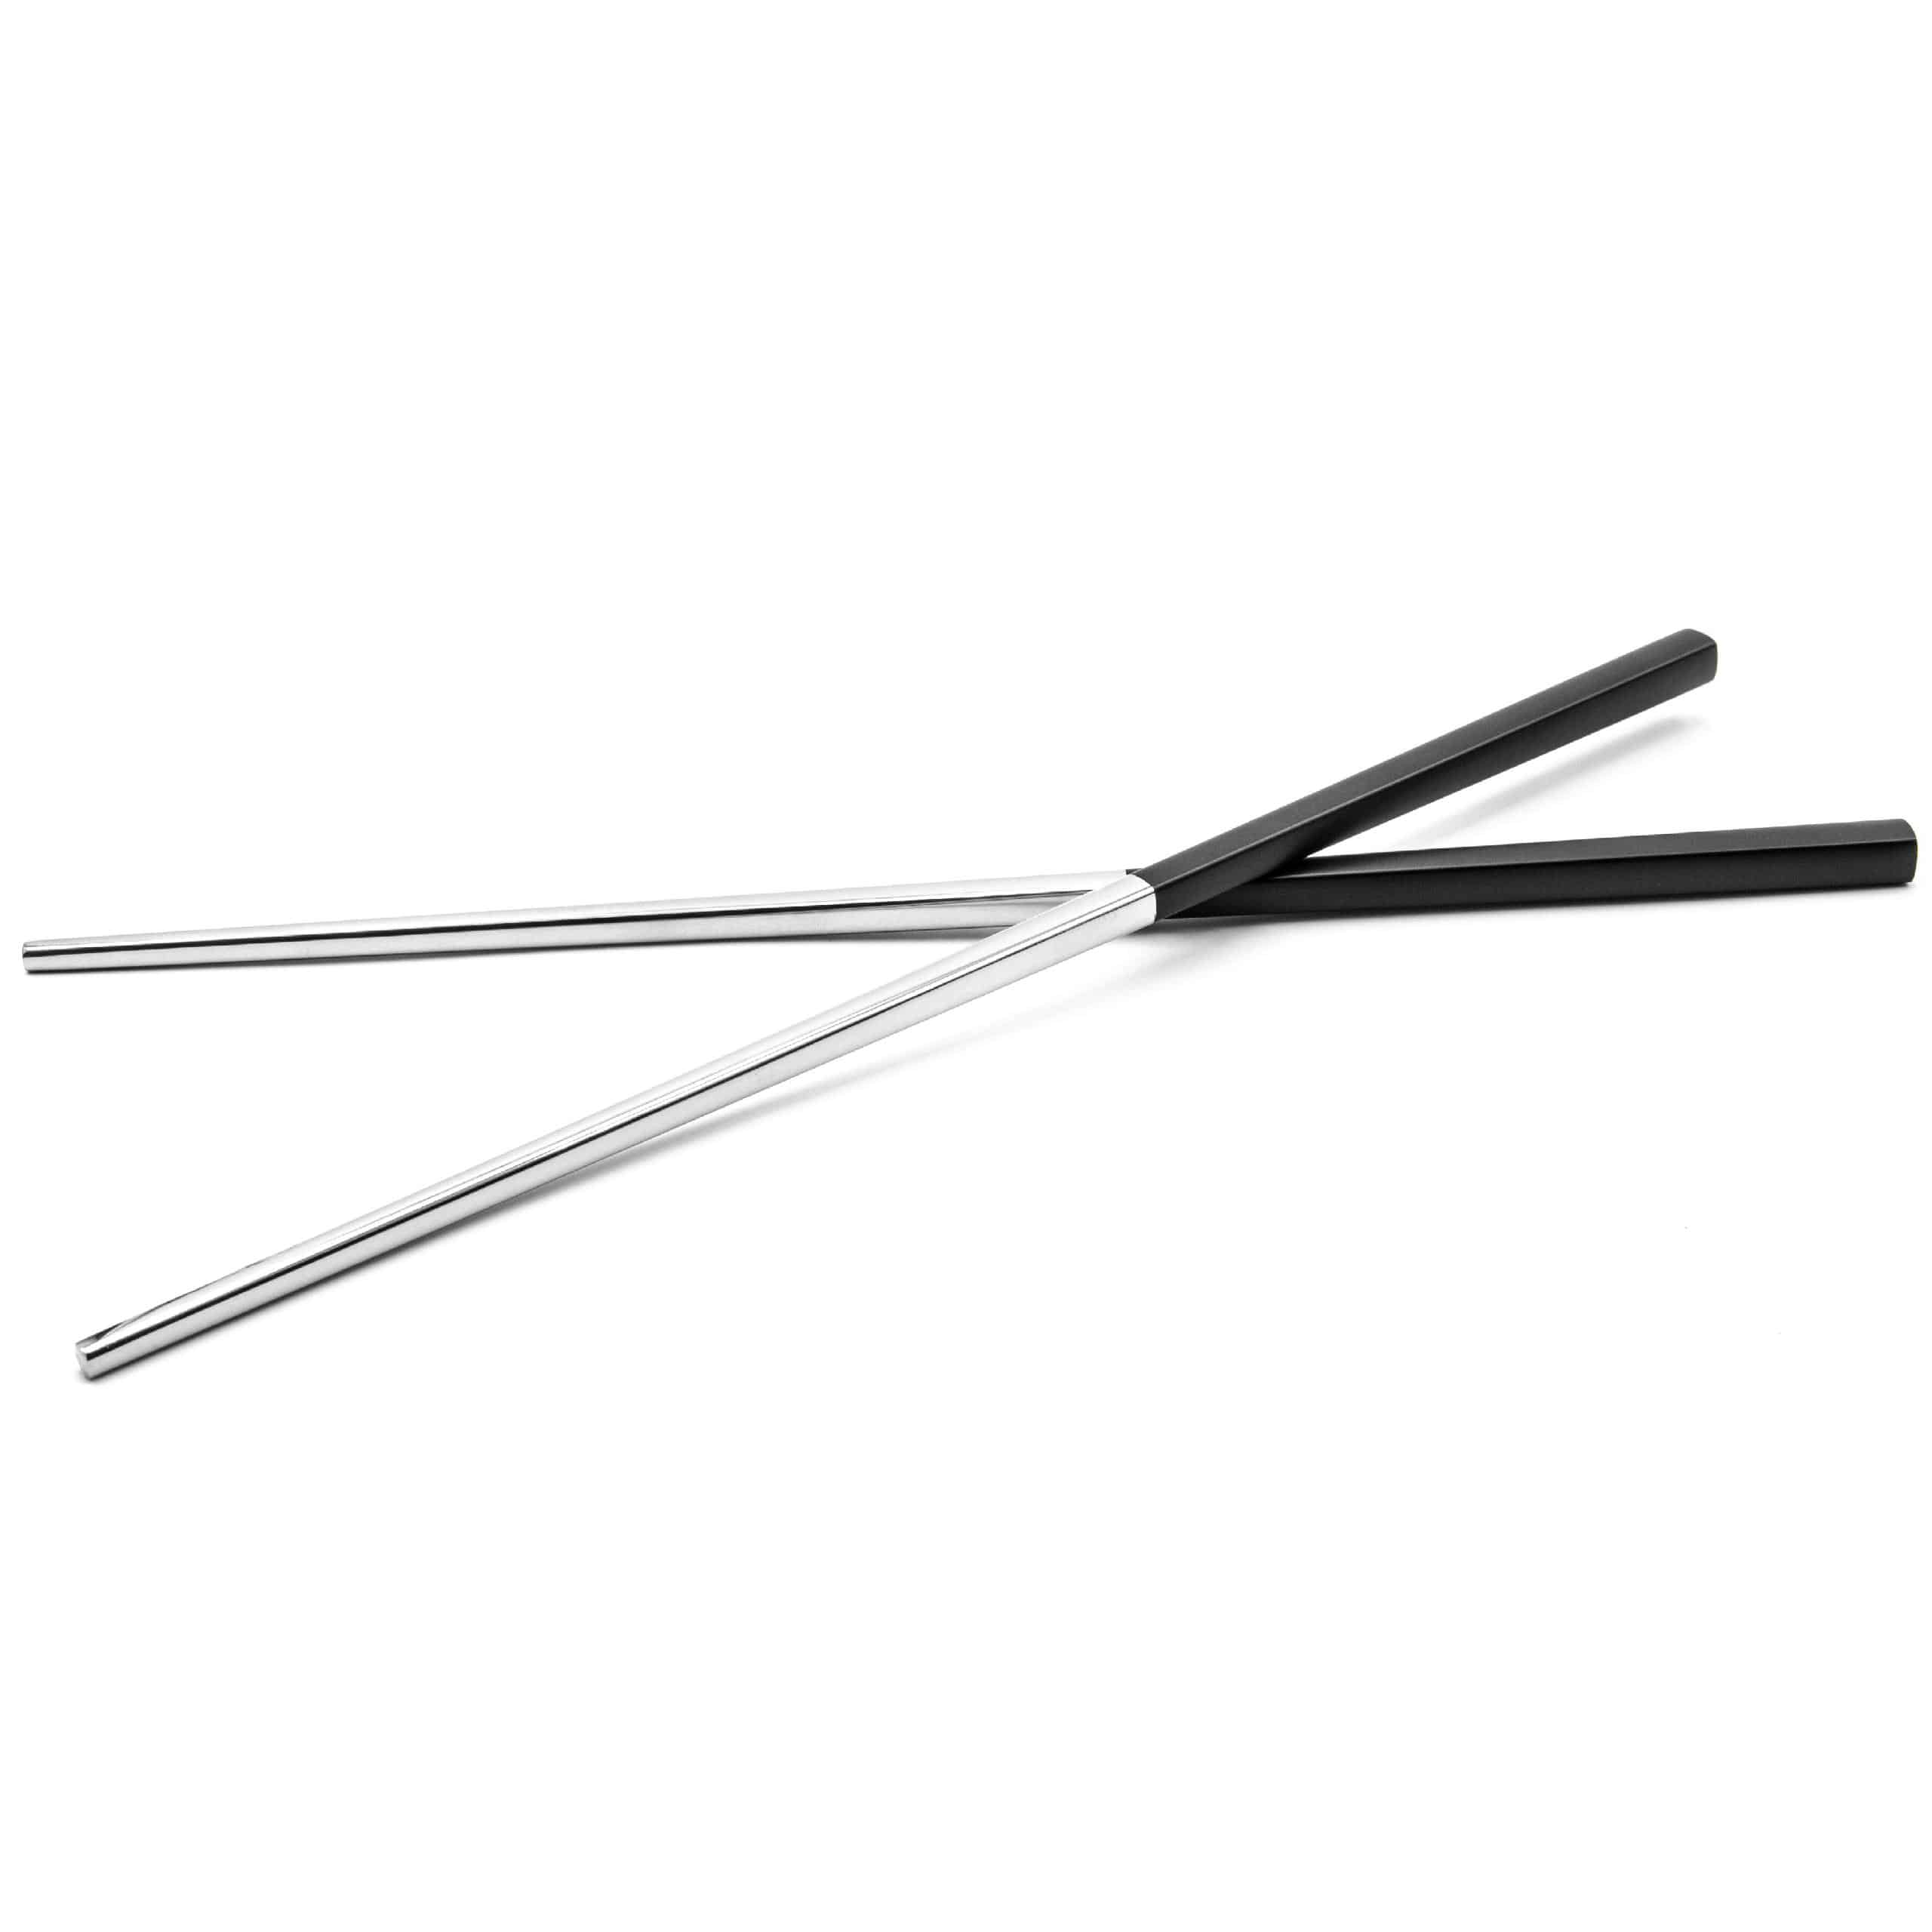 Pałeczki do jedzenia sushi (1 para) - 23 cm, stal nierdzewna, czarny, srebrny